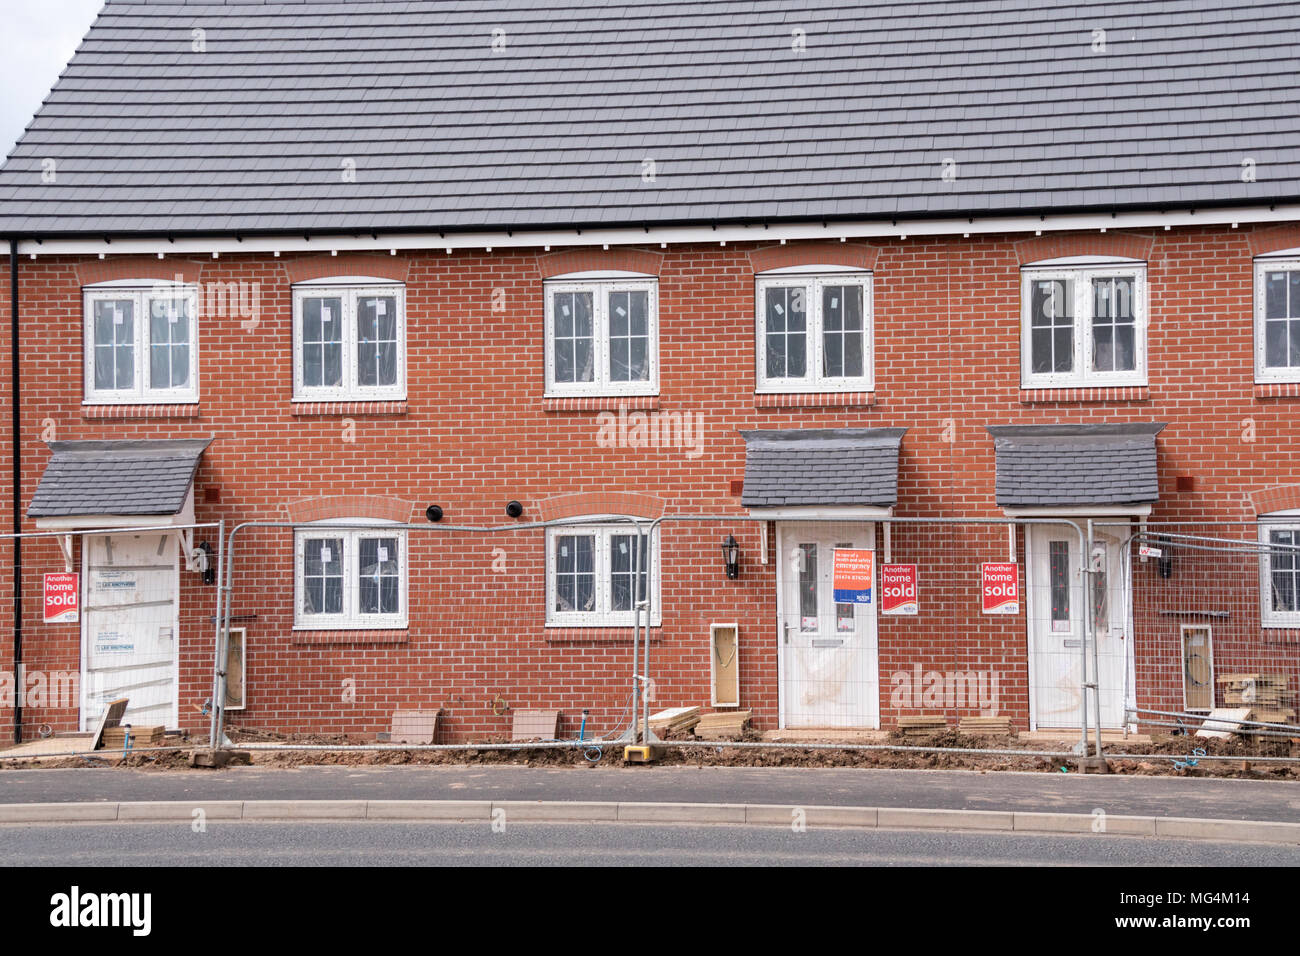 Desarrollo de nuevas viviendas por Bovis Homes en antiguos terrenos del Cinturón Verde, Redditch, Worcestershire, Inglaterra, Reino Unido. Foto de stock